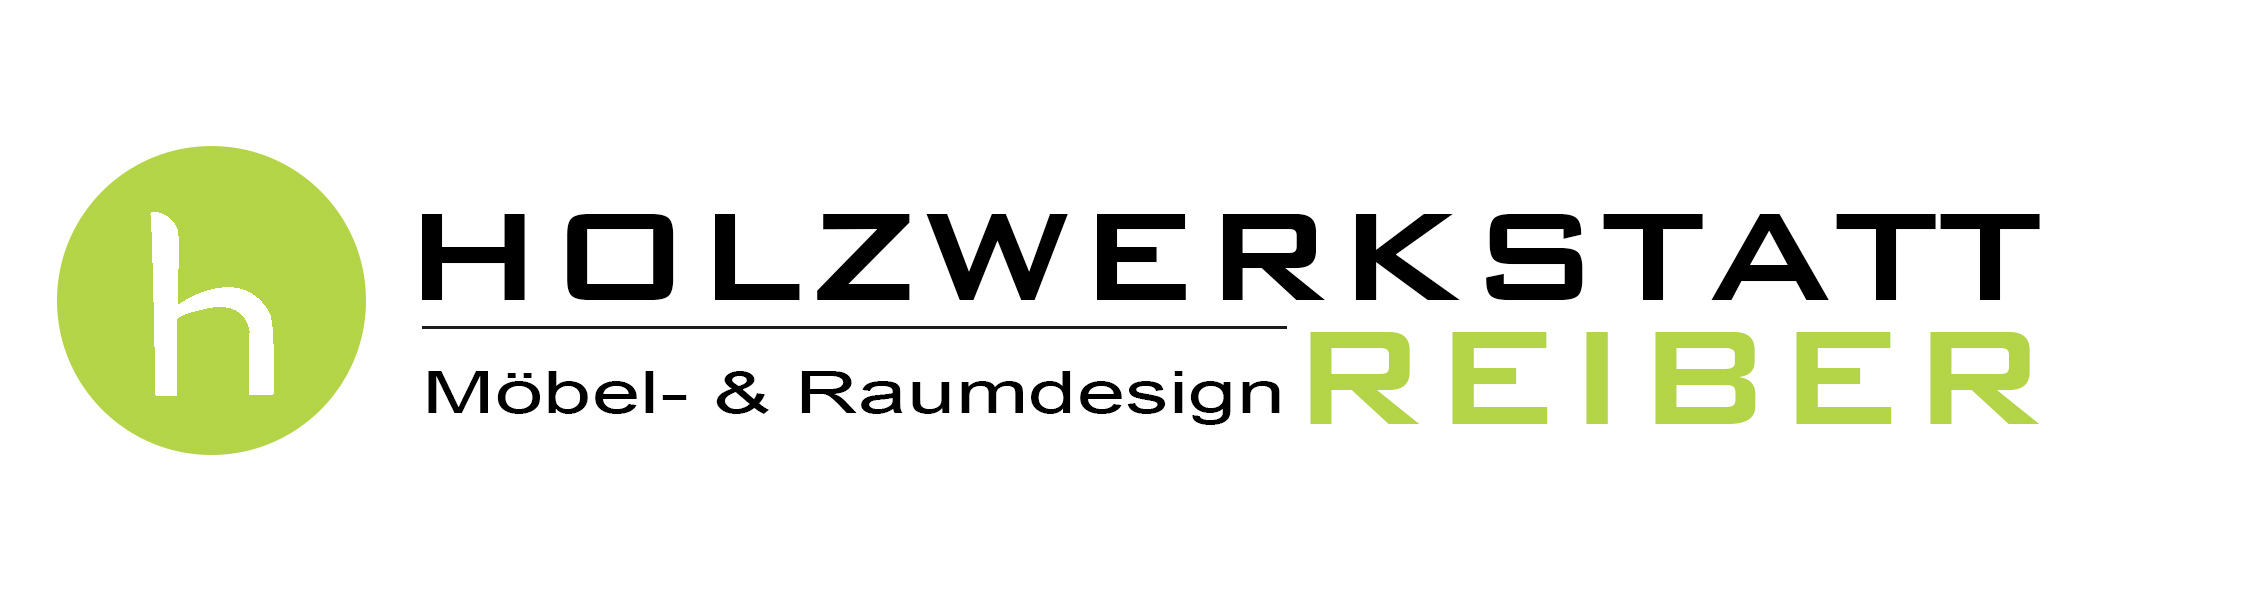 Holzwerkstatt Reiber Logo